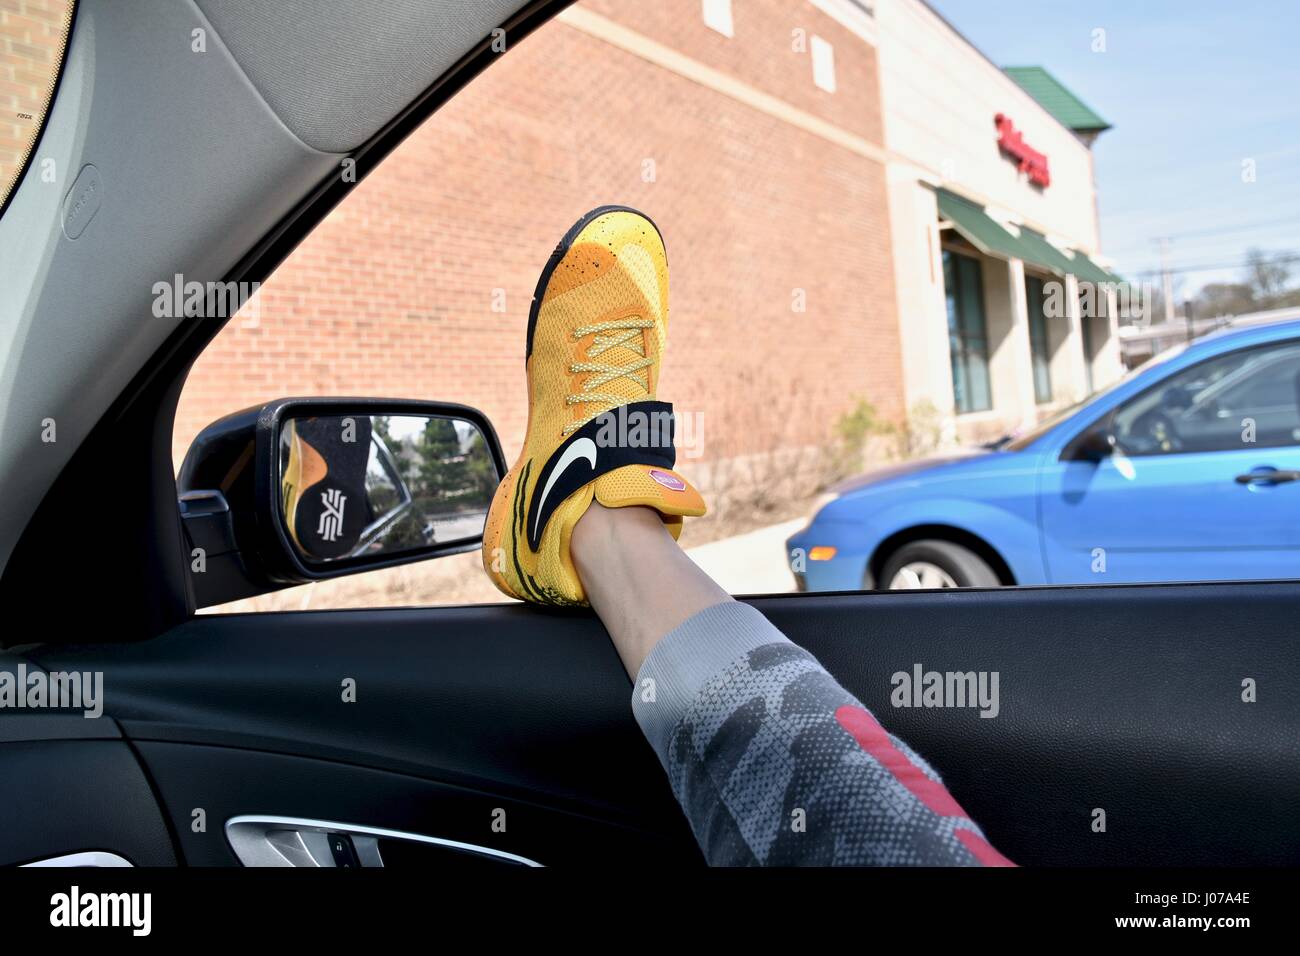 Füße mit Nike Schuhe aus Autofenster hängen Stockfotografie - Alamy